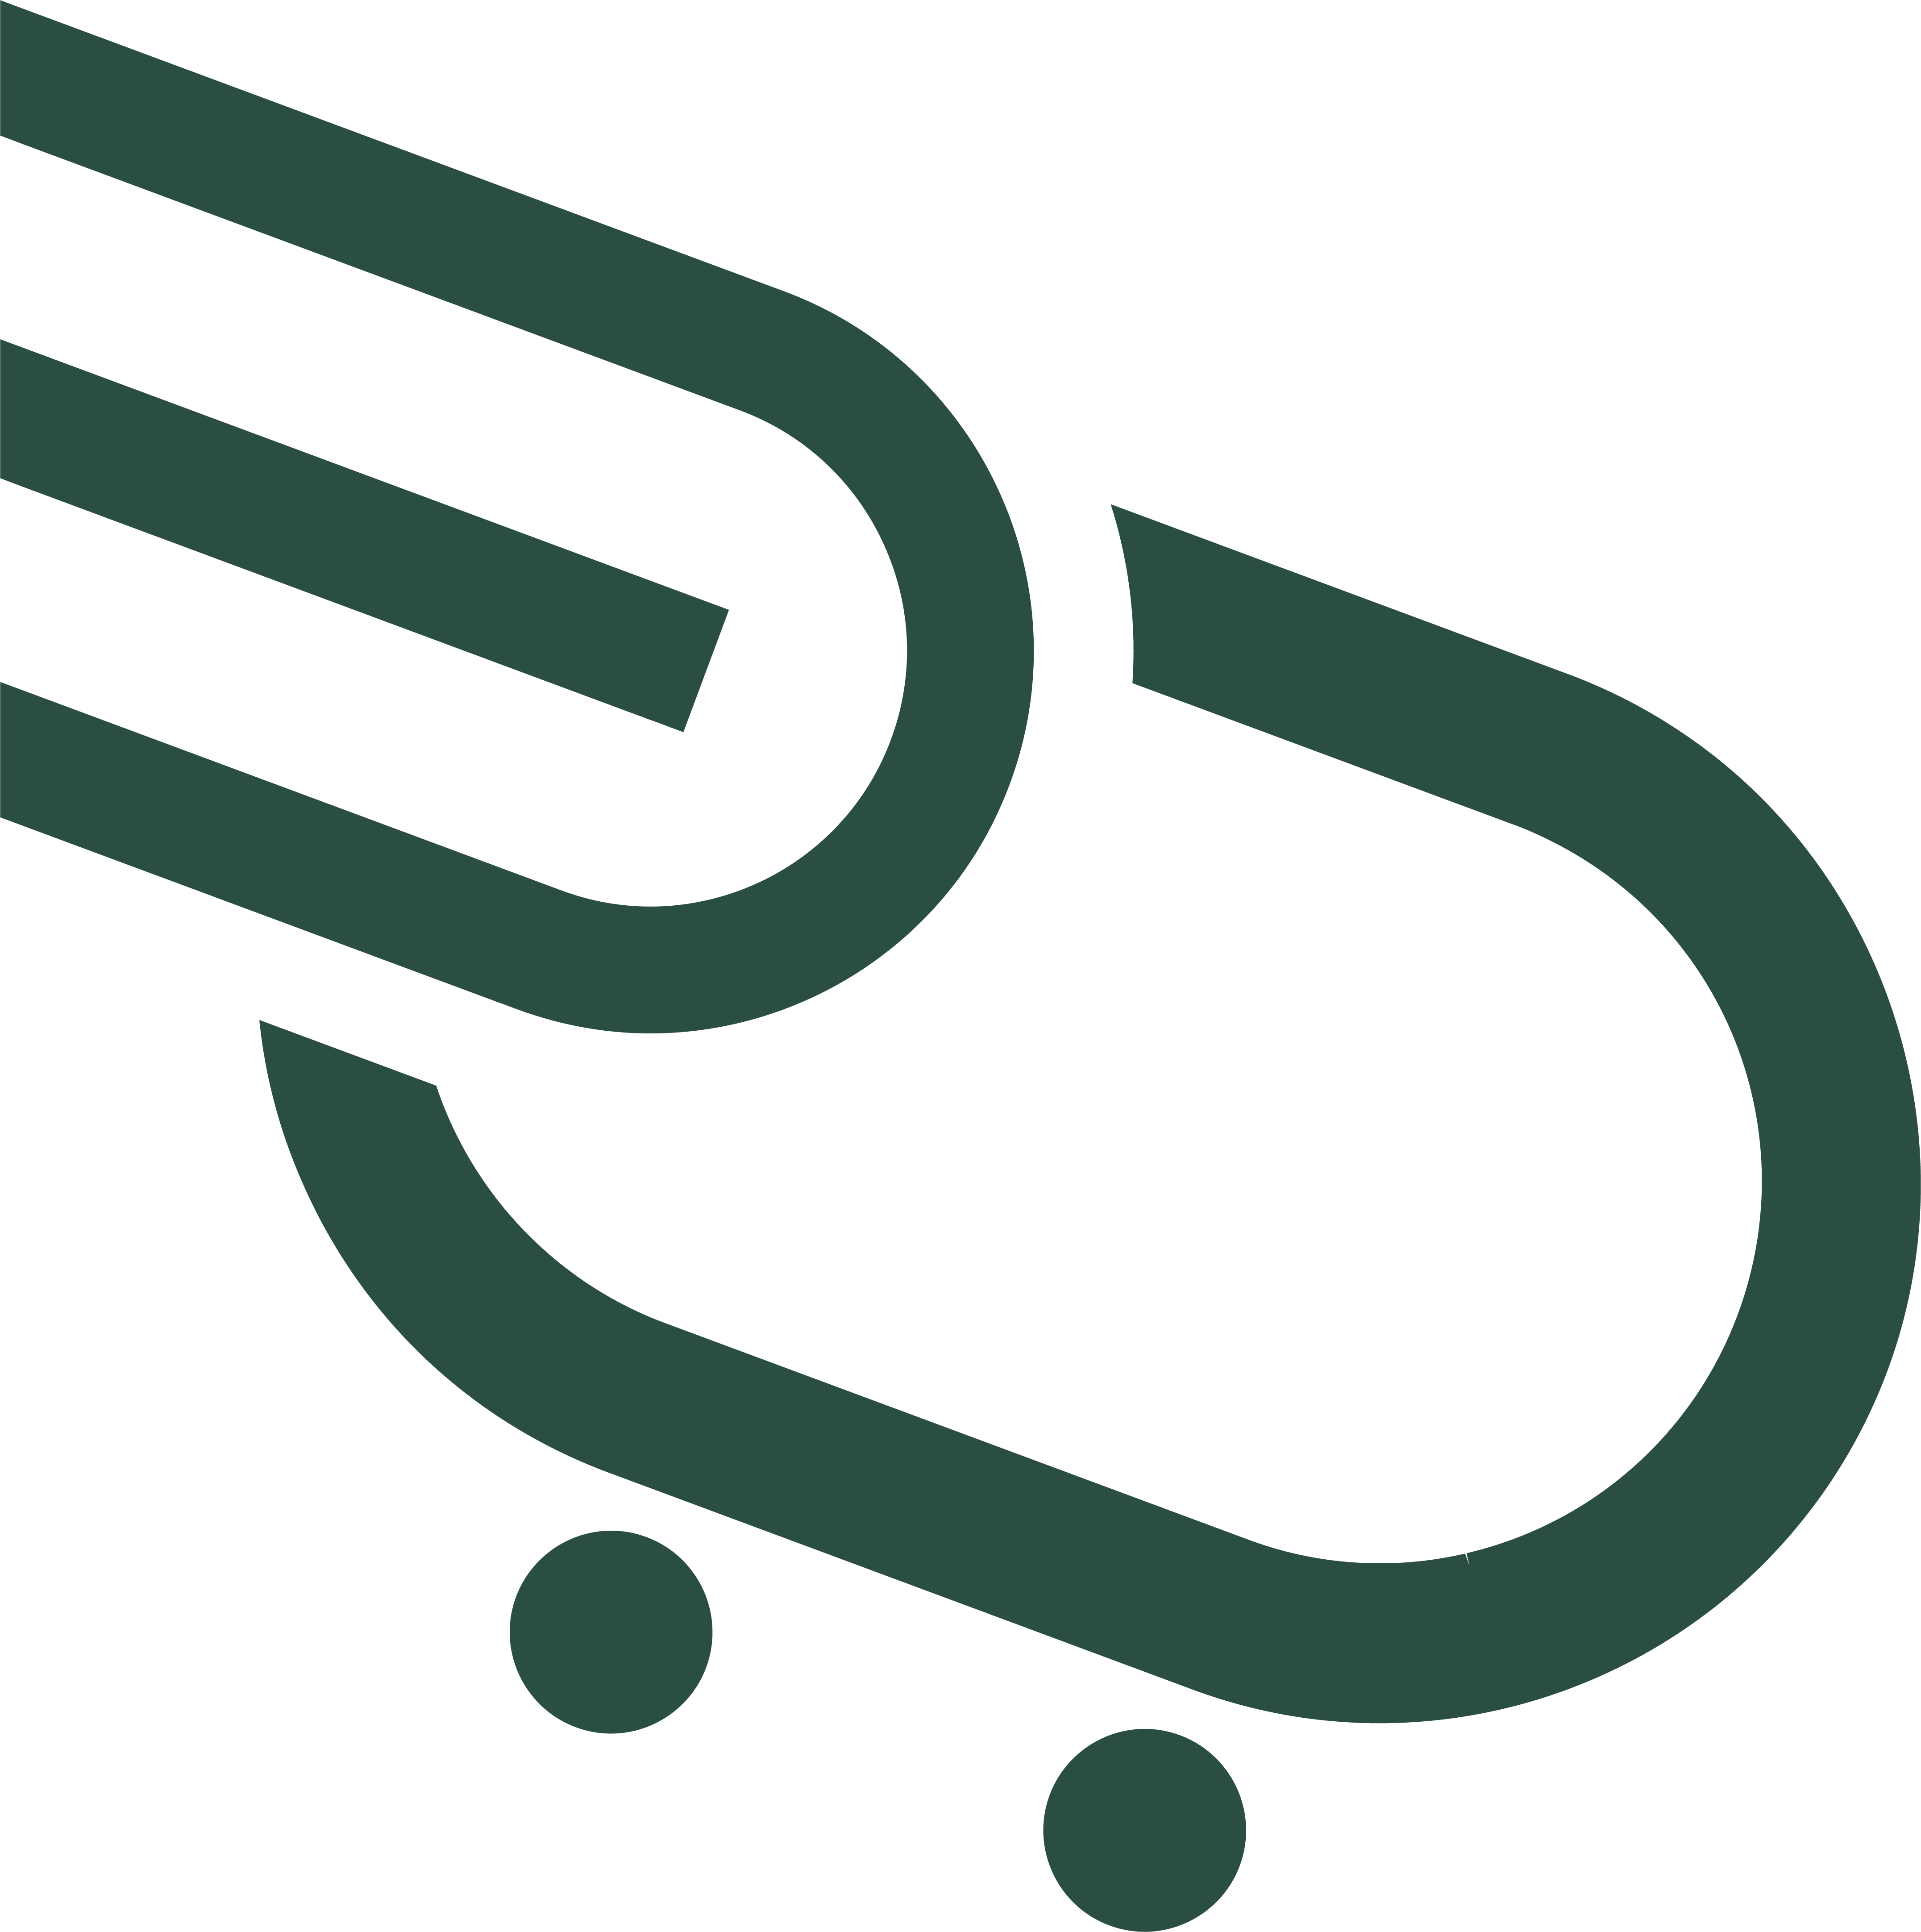 Enithing's logo